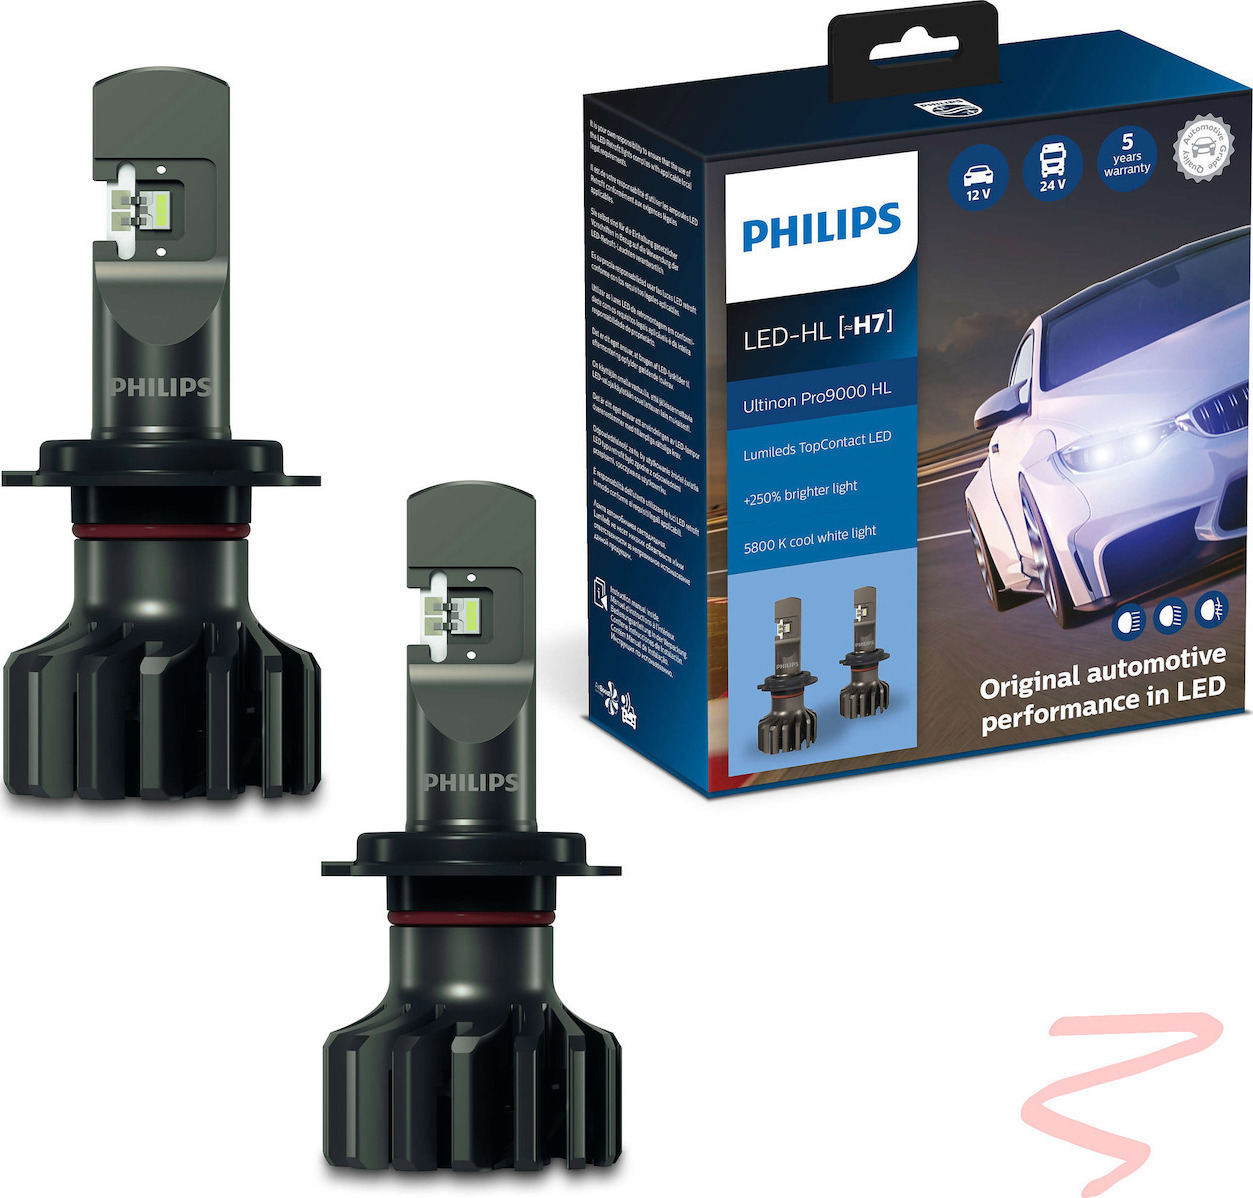 Philips Ultinon Pro9000 Car H7 Light Bulb LED 5800K Cold White